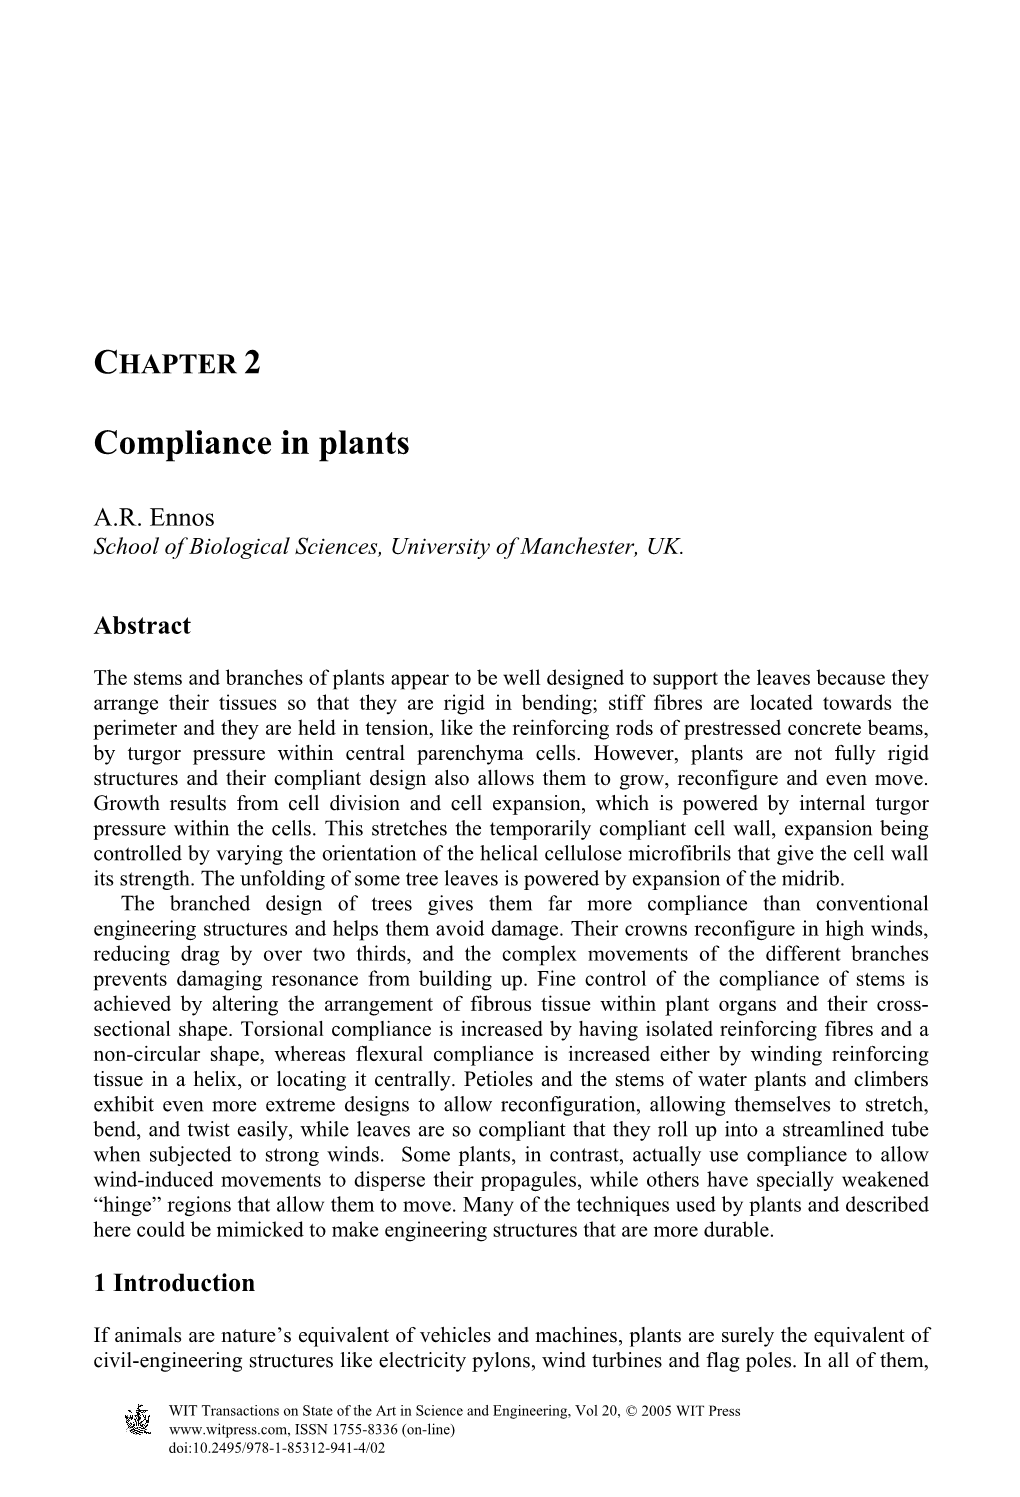 Compliance in Plants